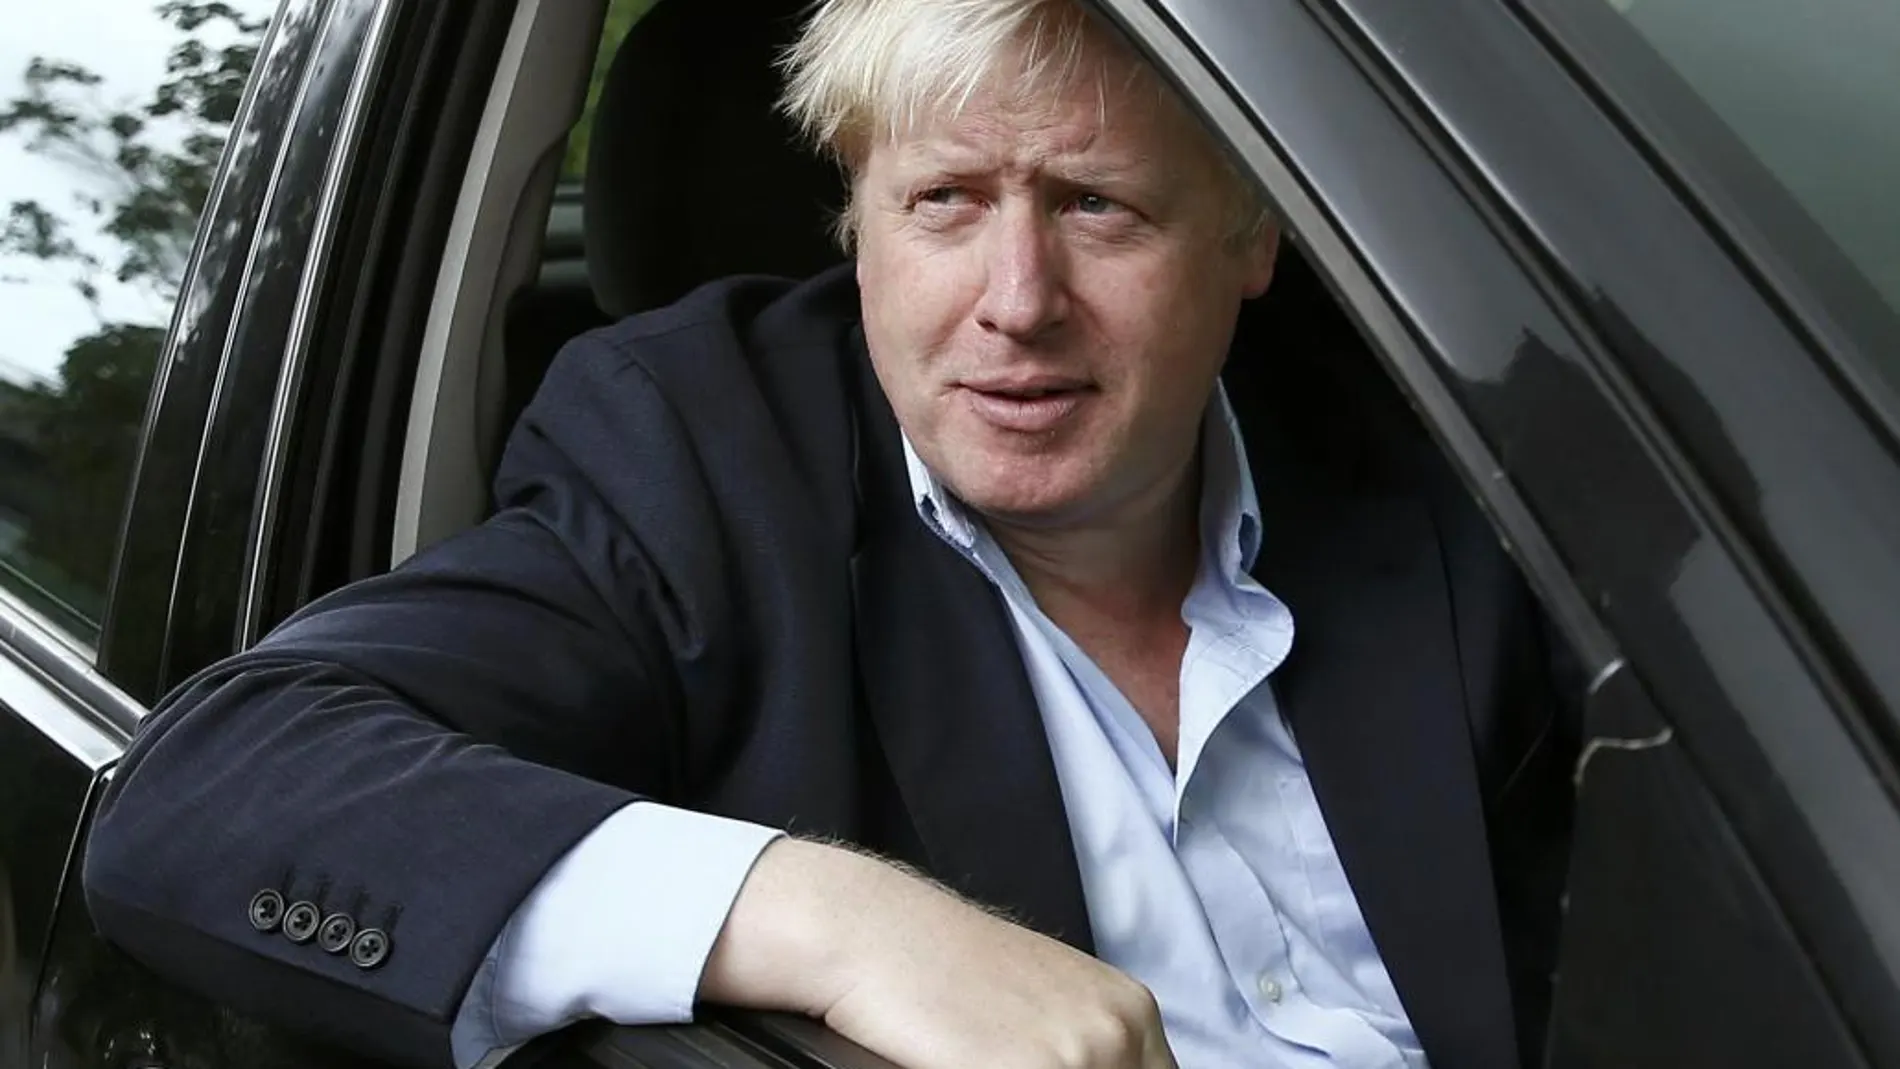 Objetivo de Cameron: decapitar a Boris